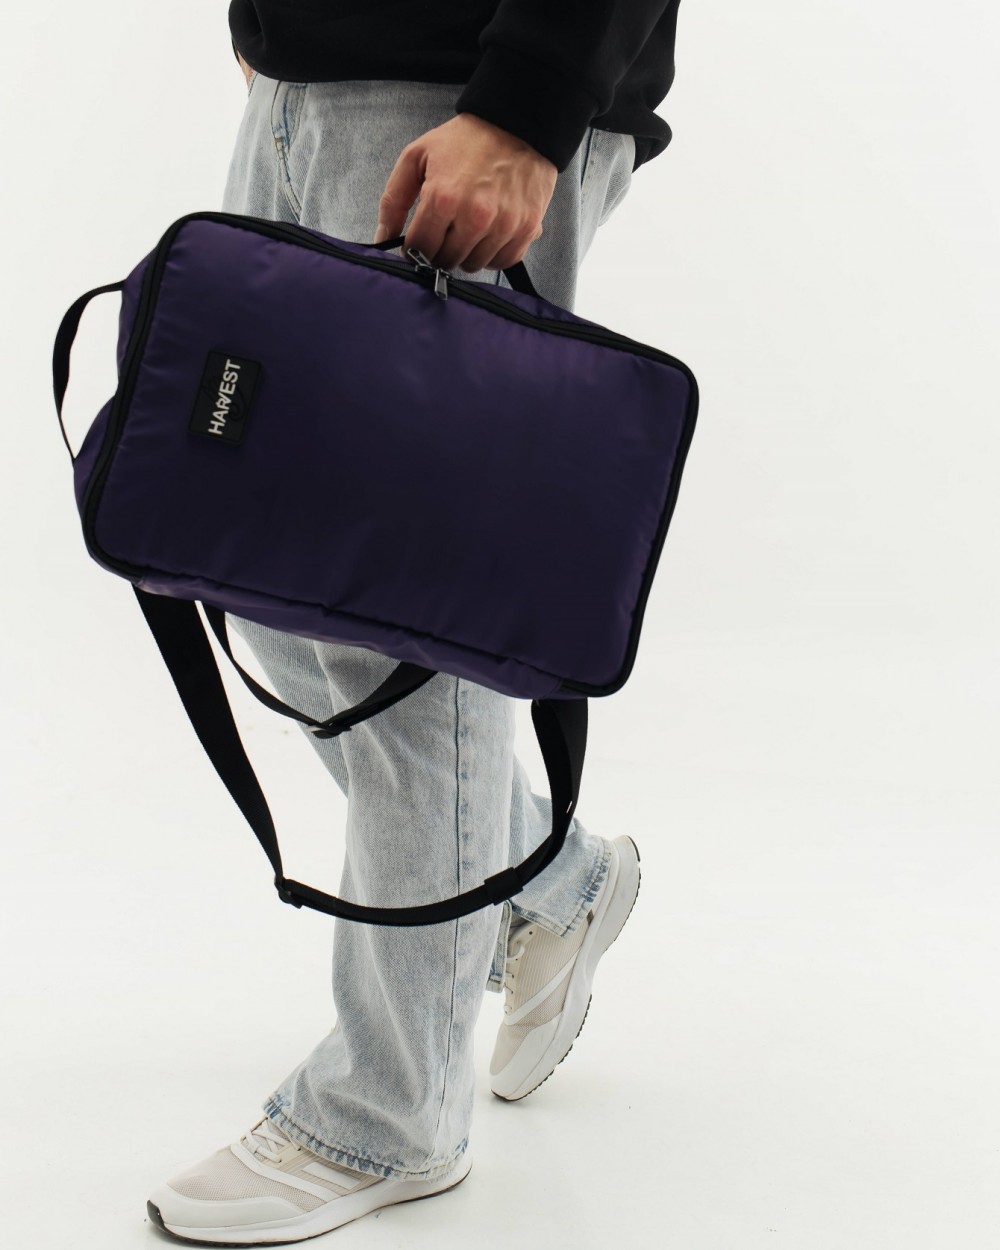 Сумка-рюкзак "Travel Kit", поліестер, фіолет